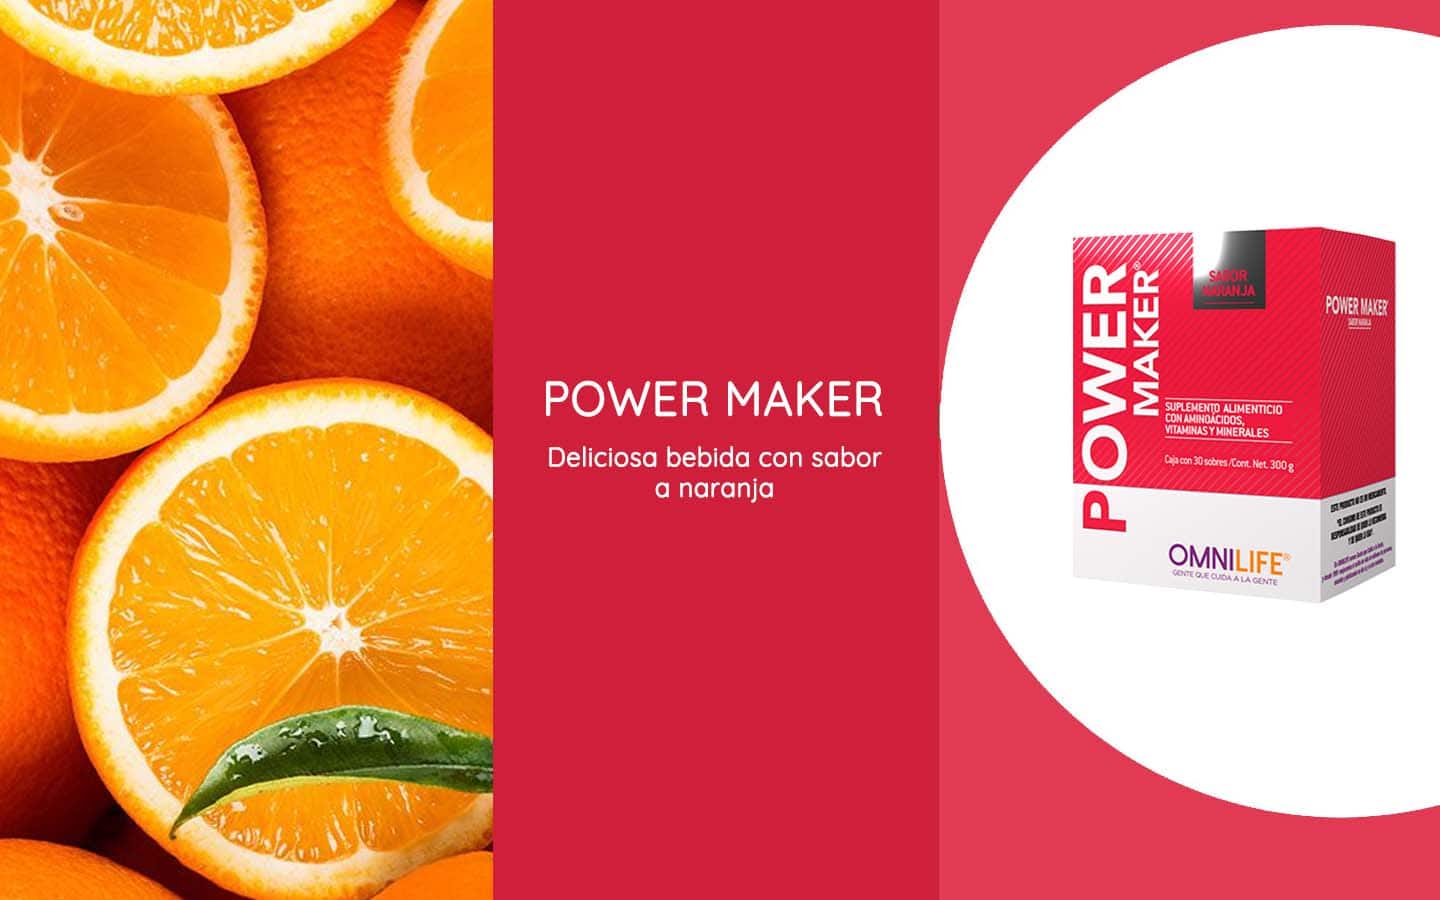 Power Maker de Omnilife es una deliciosa bebida con sabor a naranja